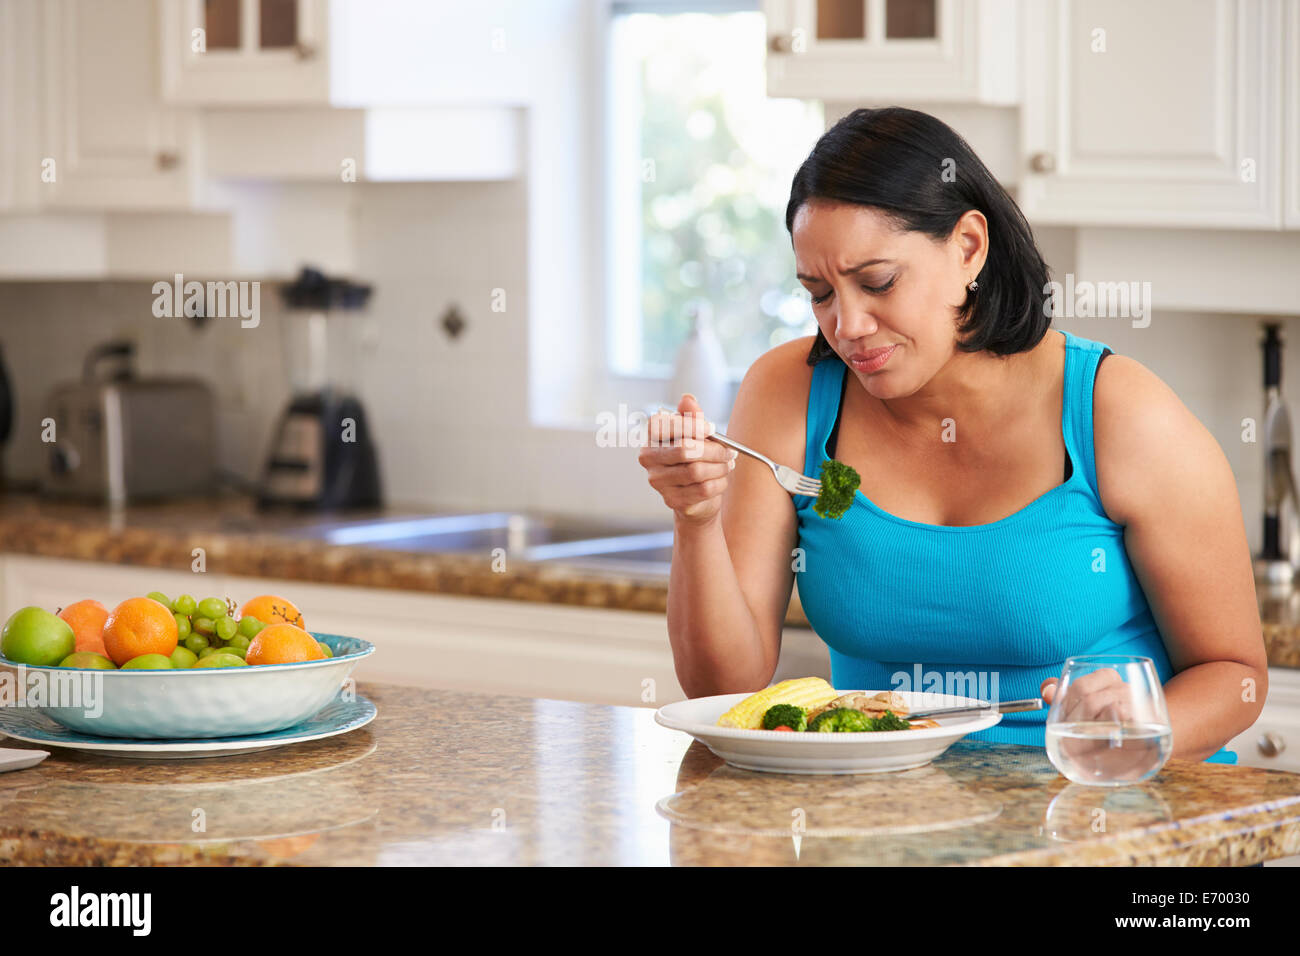 Übergewichtige Frau gesunde Mahlzeit in der Küche Essen satt Stockfoto